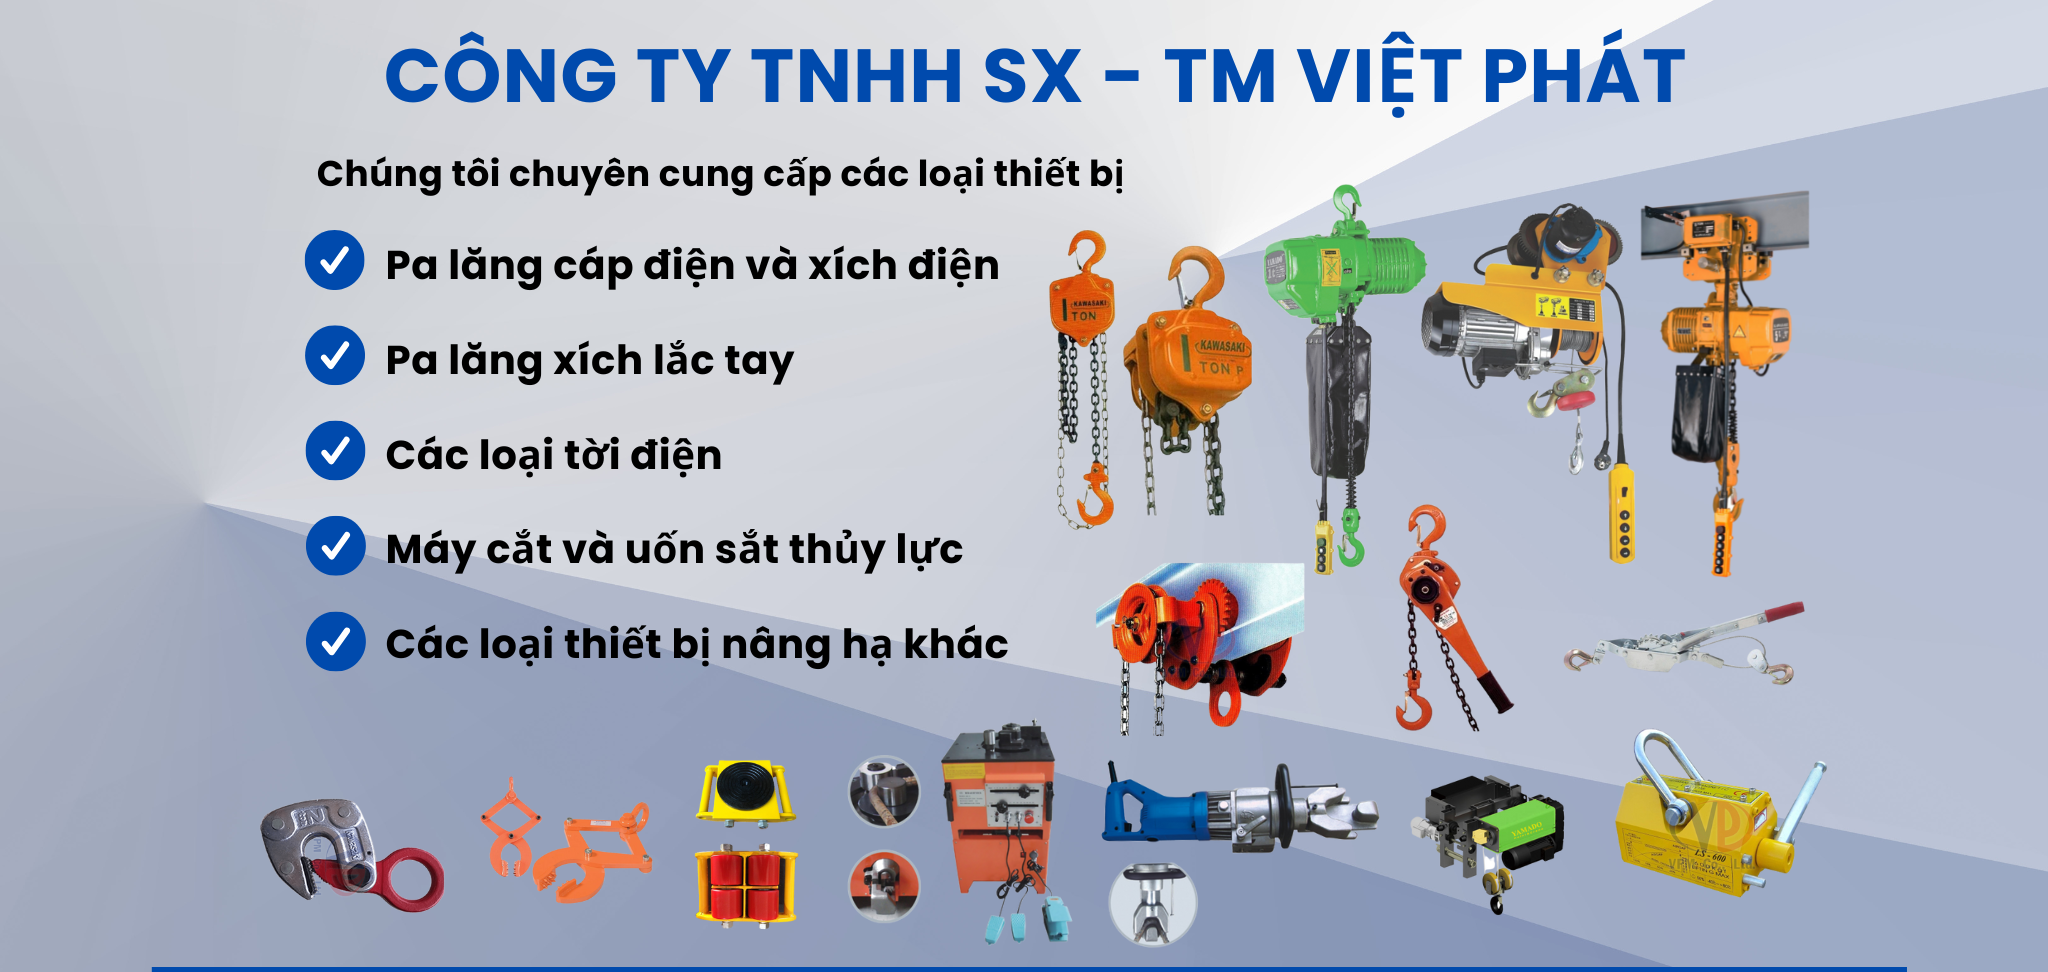 Công ty Việt Phát chuyên cung cấp các loại Palang và tời điện xây dựng